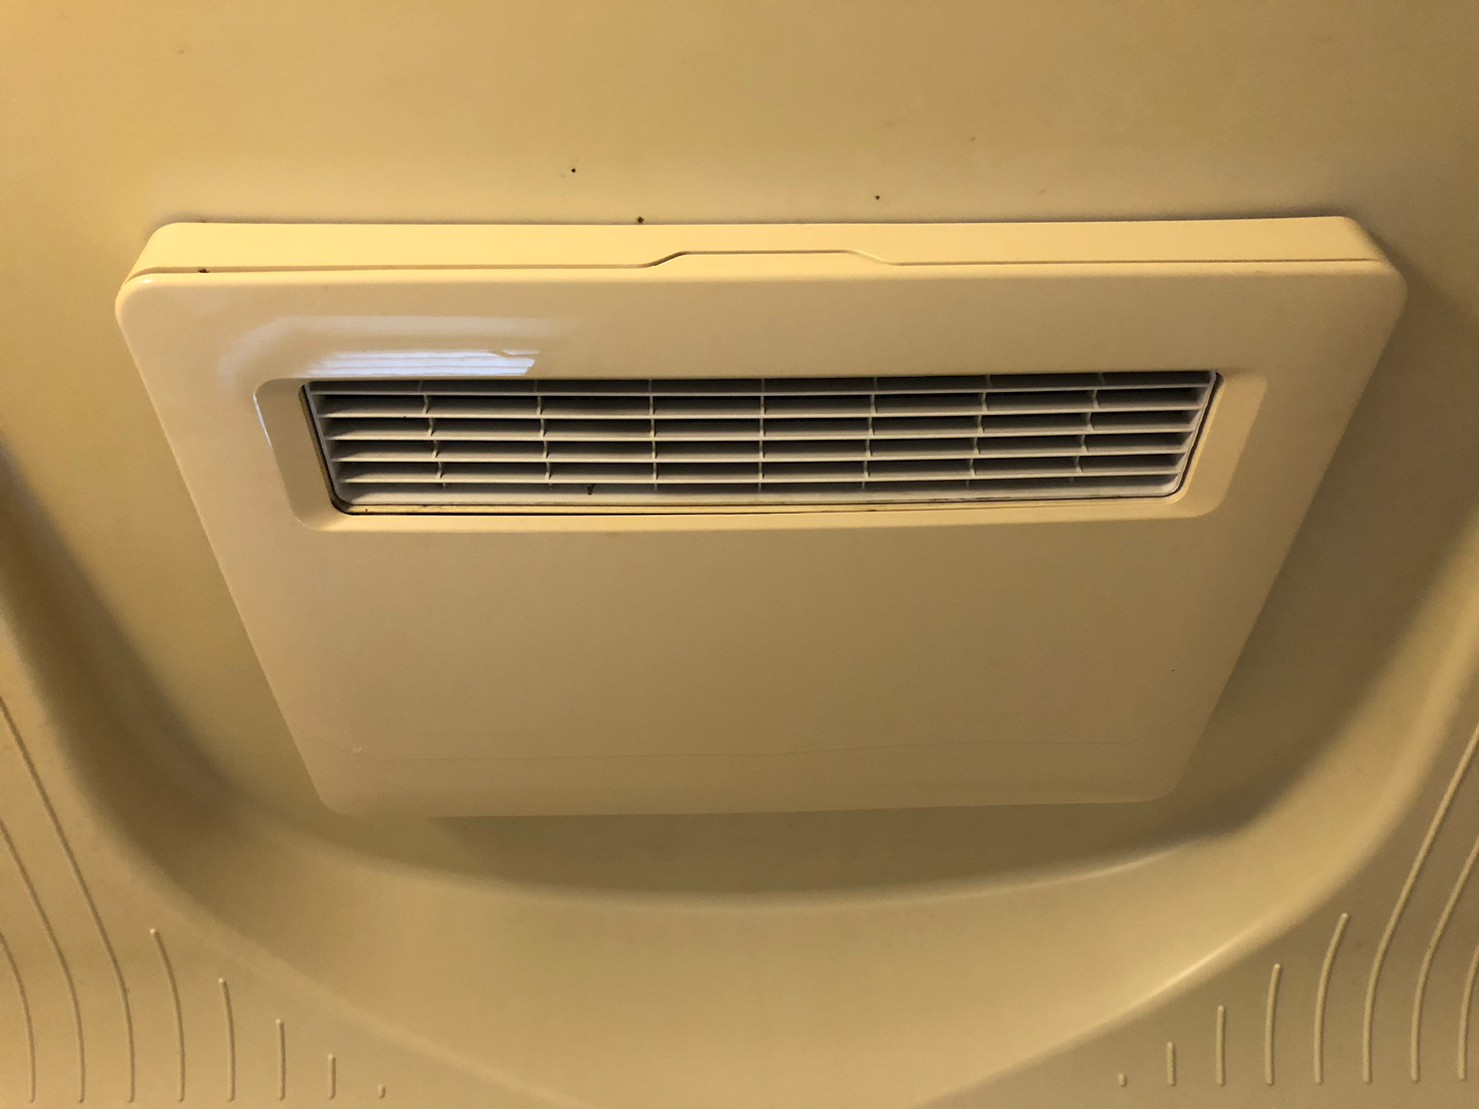 三菱電機 天井埋込み型浴室換気暖房乾燥機『バスカラット24』V-141BZ5 